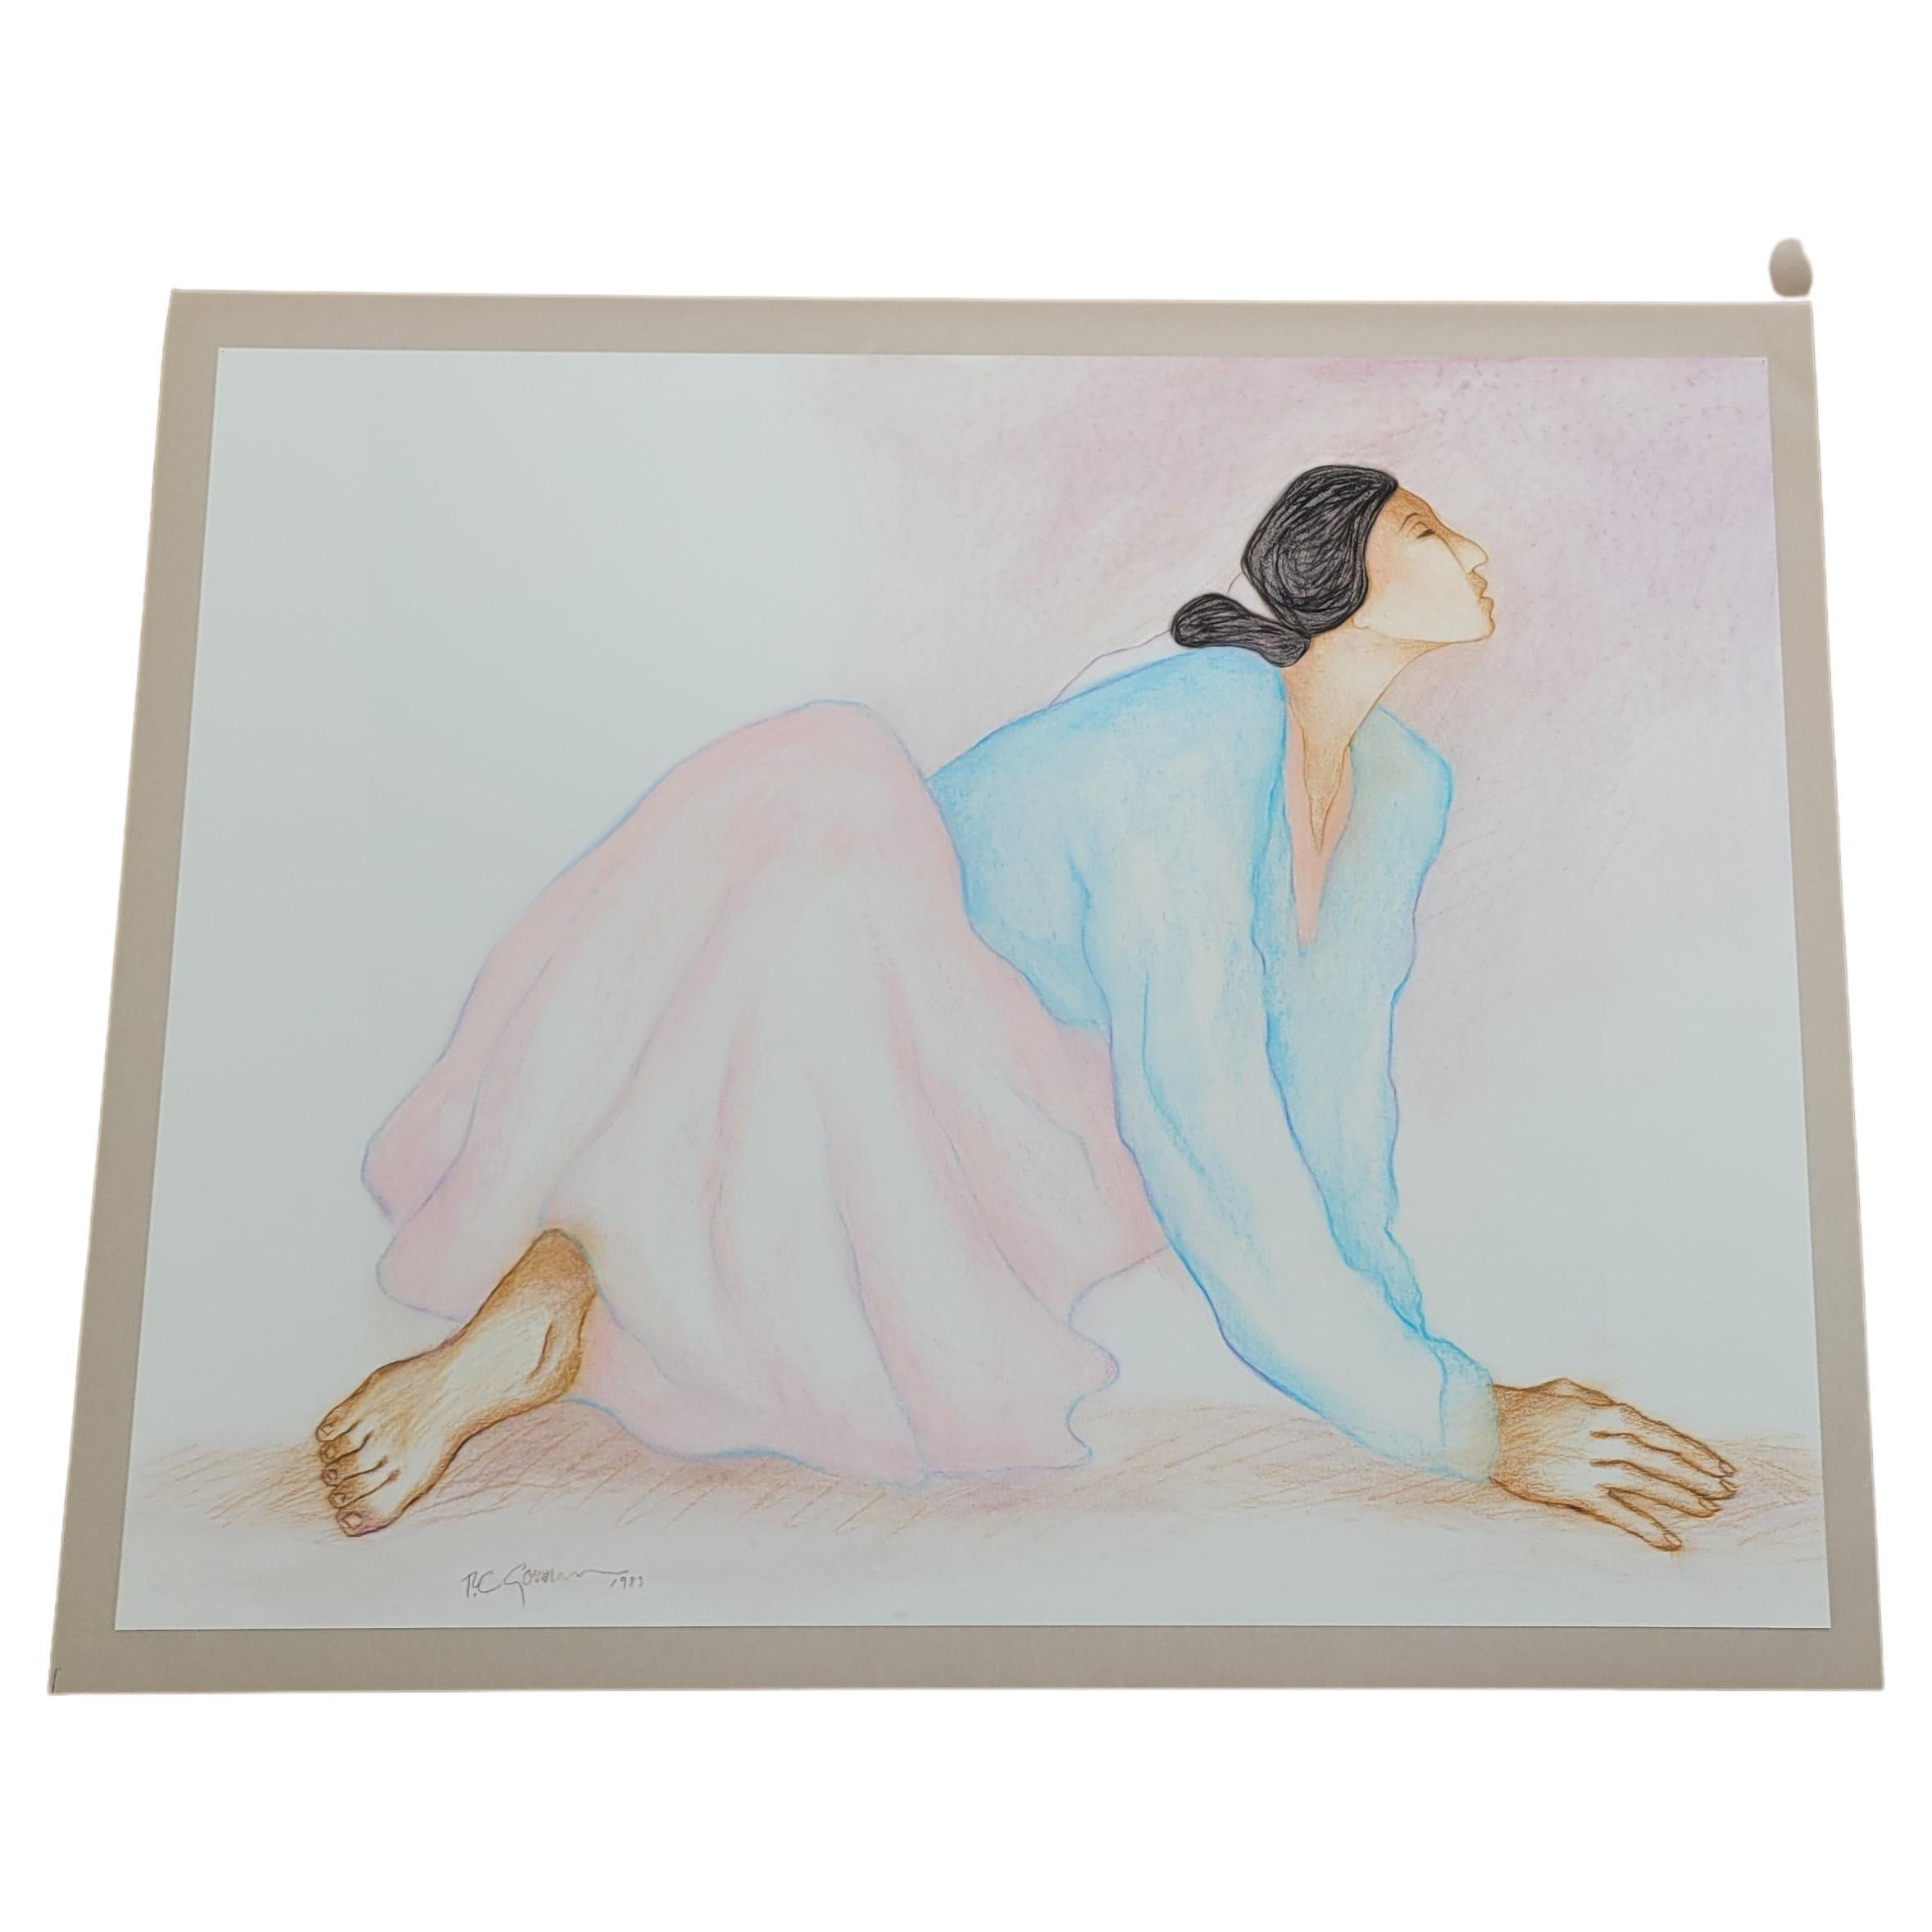 Mujer con falda rosa y blusa azul claro - 1983

Se trata de un pastel original de R.C. Gorman.  Esta pieza está sin enmarcar y en su funda protectora original.

Las medidas son 23 pulgadas de alto y 29 pulgadas de ancho.  La profundidad no es